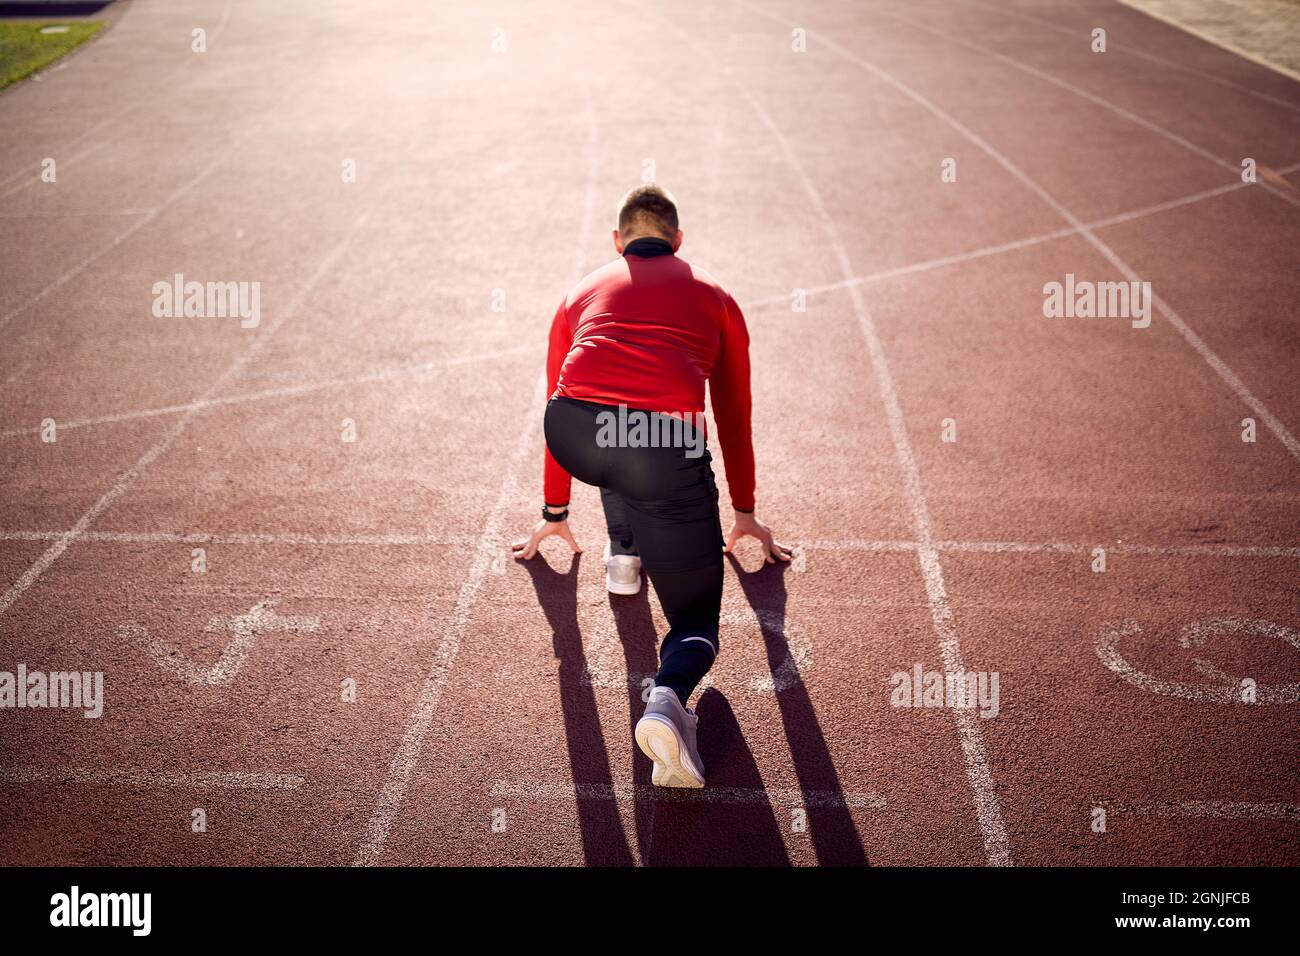 immagine del giovane atleta caucasico maschio da dietro in posizione bassa di partenza sul tracciato atletico. posizione linea di partenza. spazio copia Foto Stock